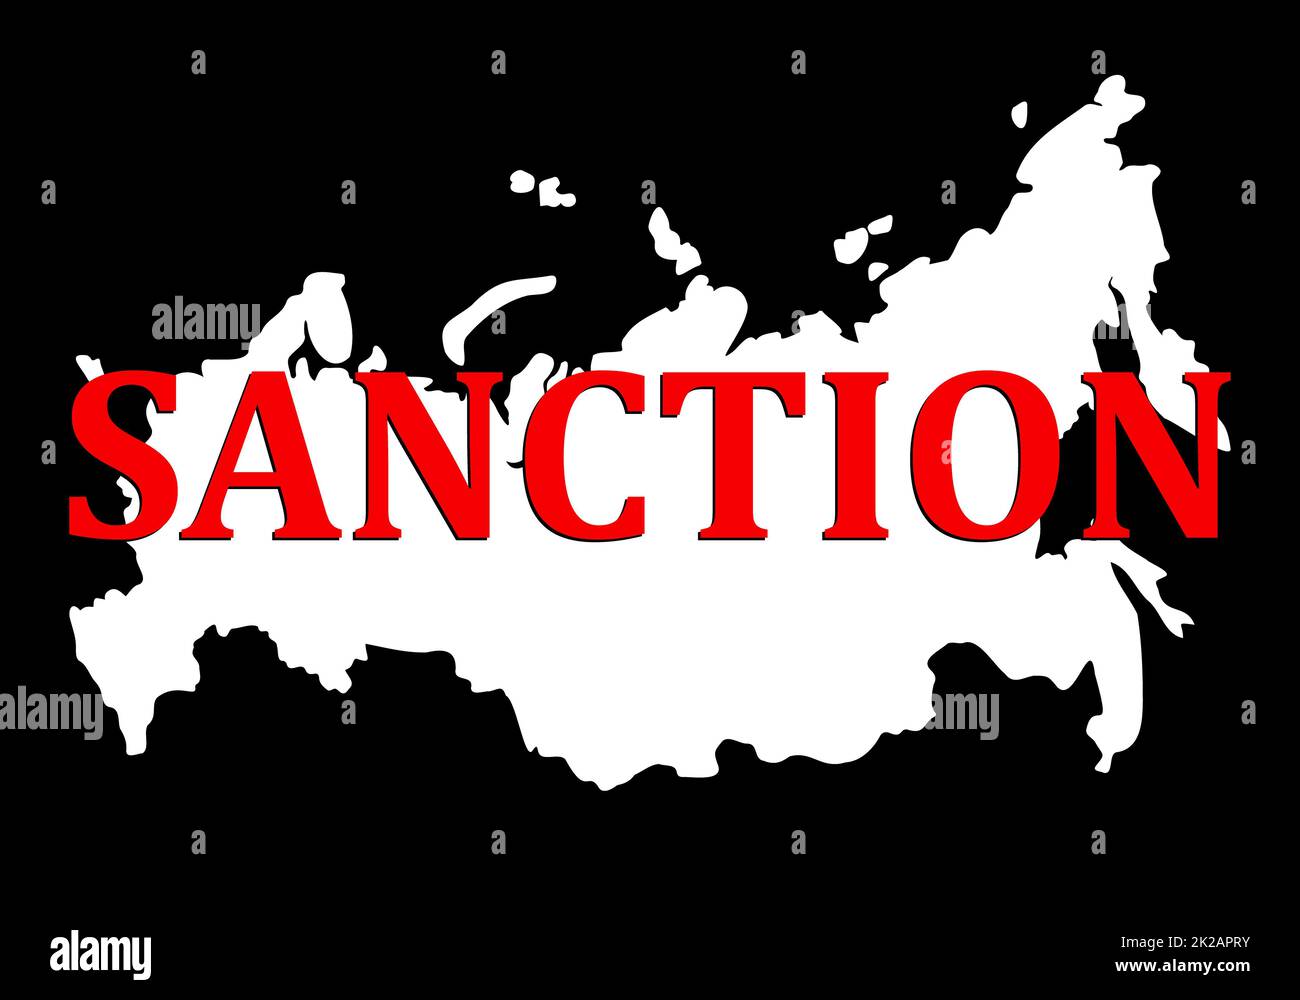 Sanktionen gegen Russland. Silhouette der Karte der russischen Föderation mit roter Text-Sanktion. Zusammenbruch und Zerstörung des Staates aufgrund von Putins Herrschaft und Angriffen auf ein Nachbarland - die Ukraine. Stockfoto